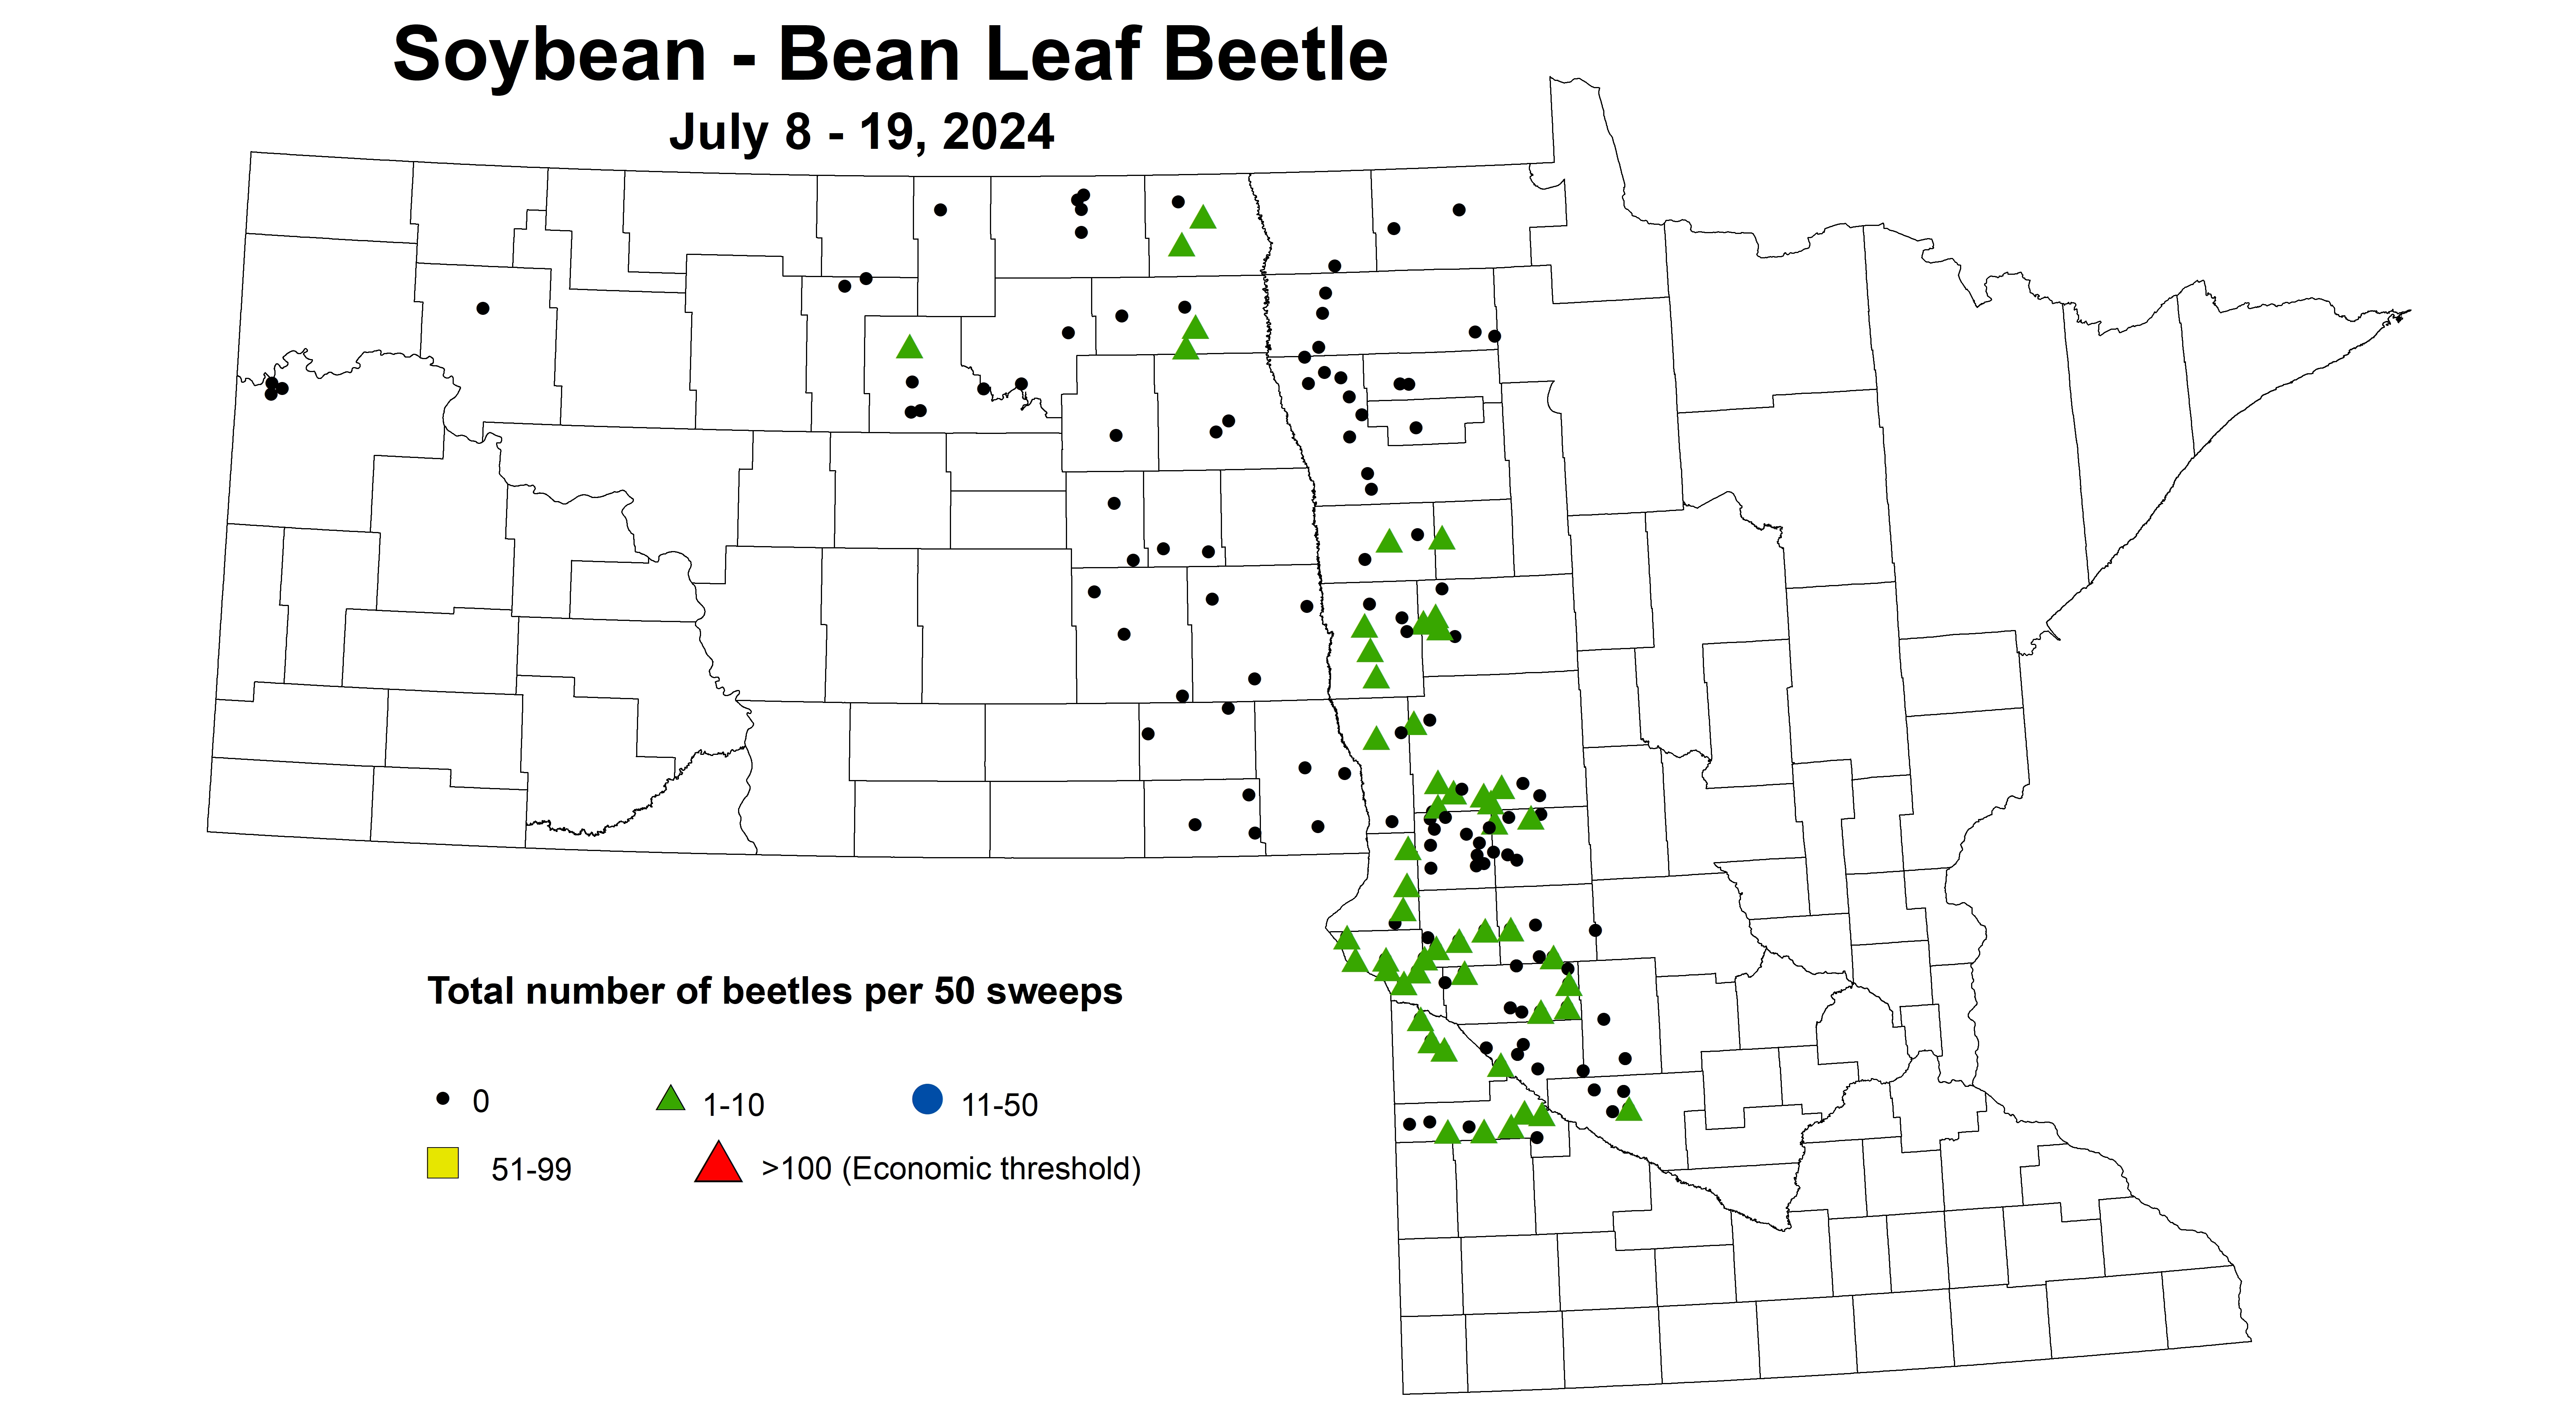 soybean BLB number of beetles per 50 sweeps July 8-19 2024